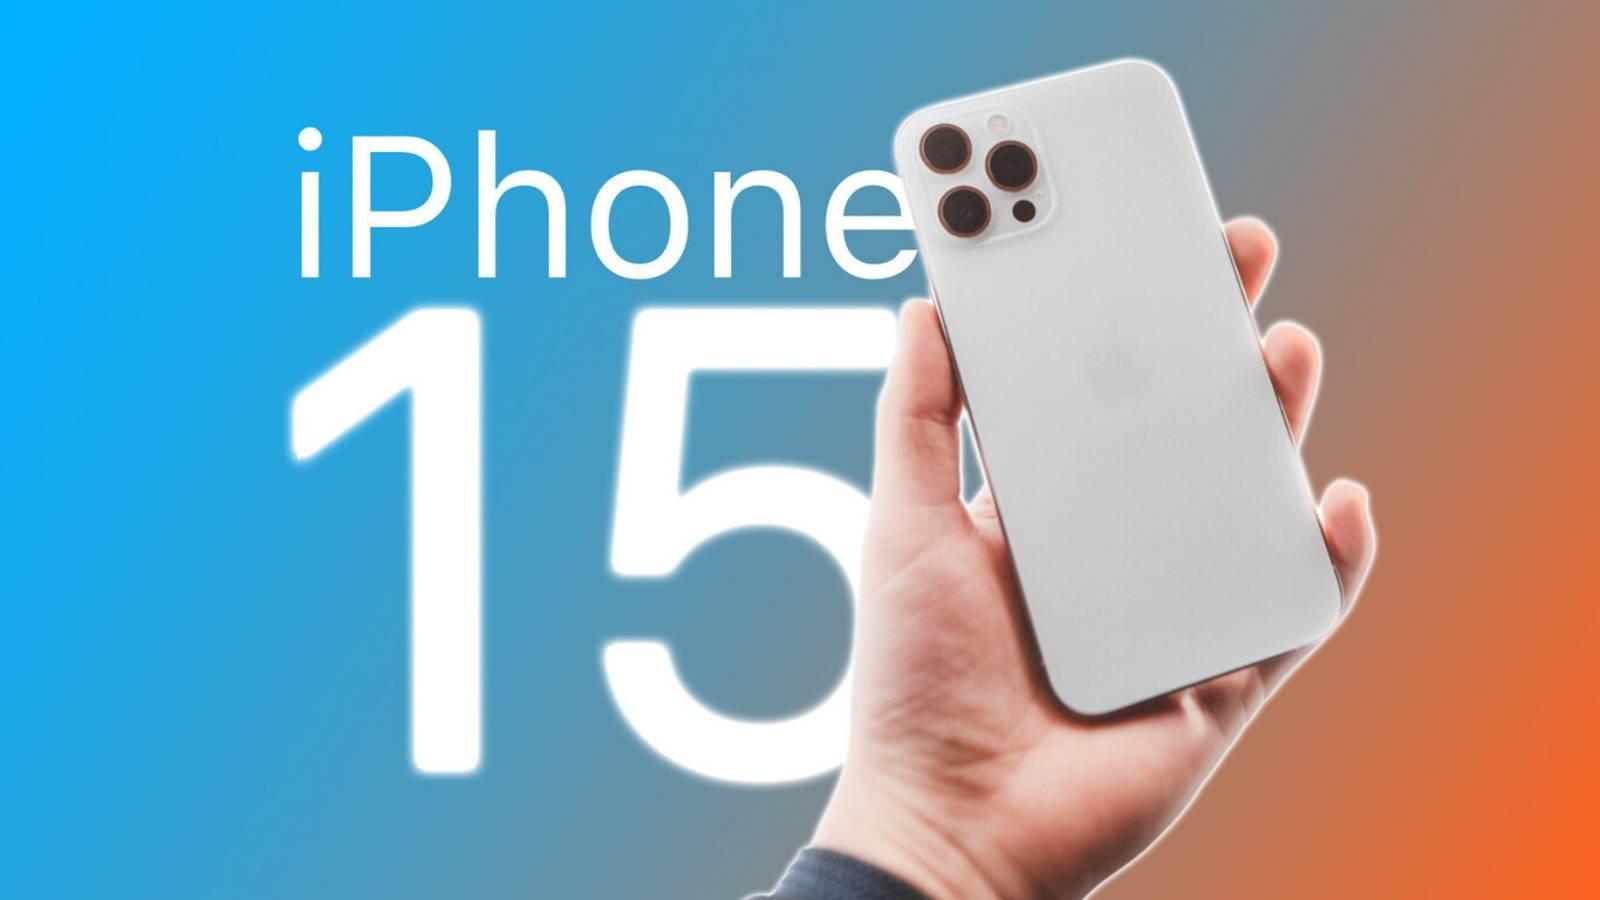 Apple Cedeaza, Cum Schimba Sfarsit Telefoanele iPhone 15